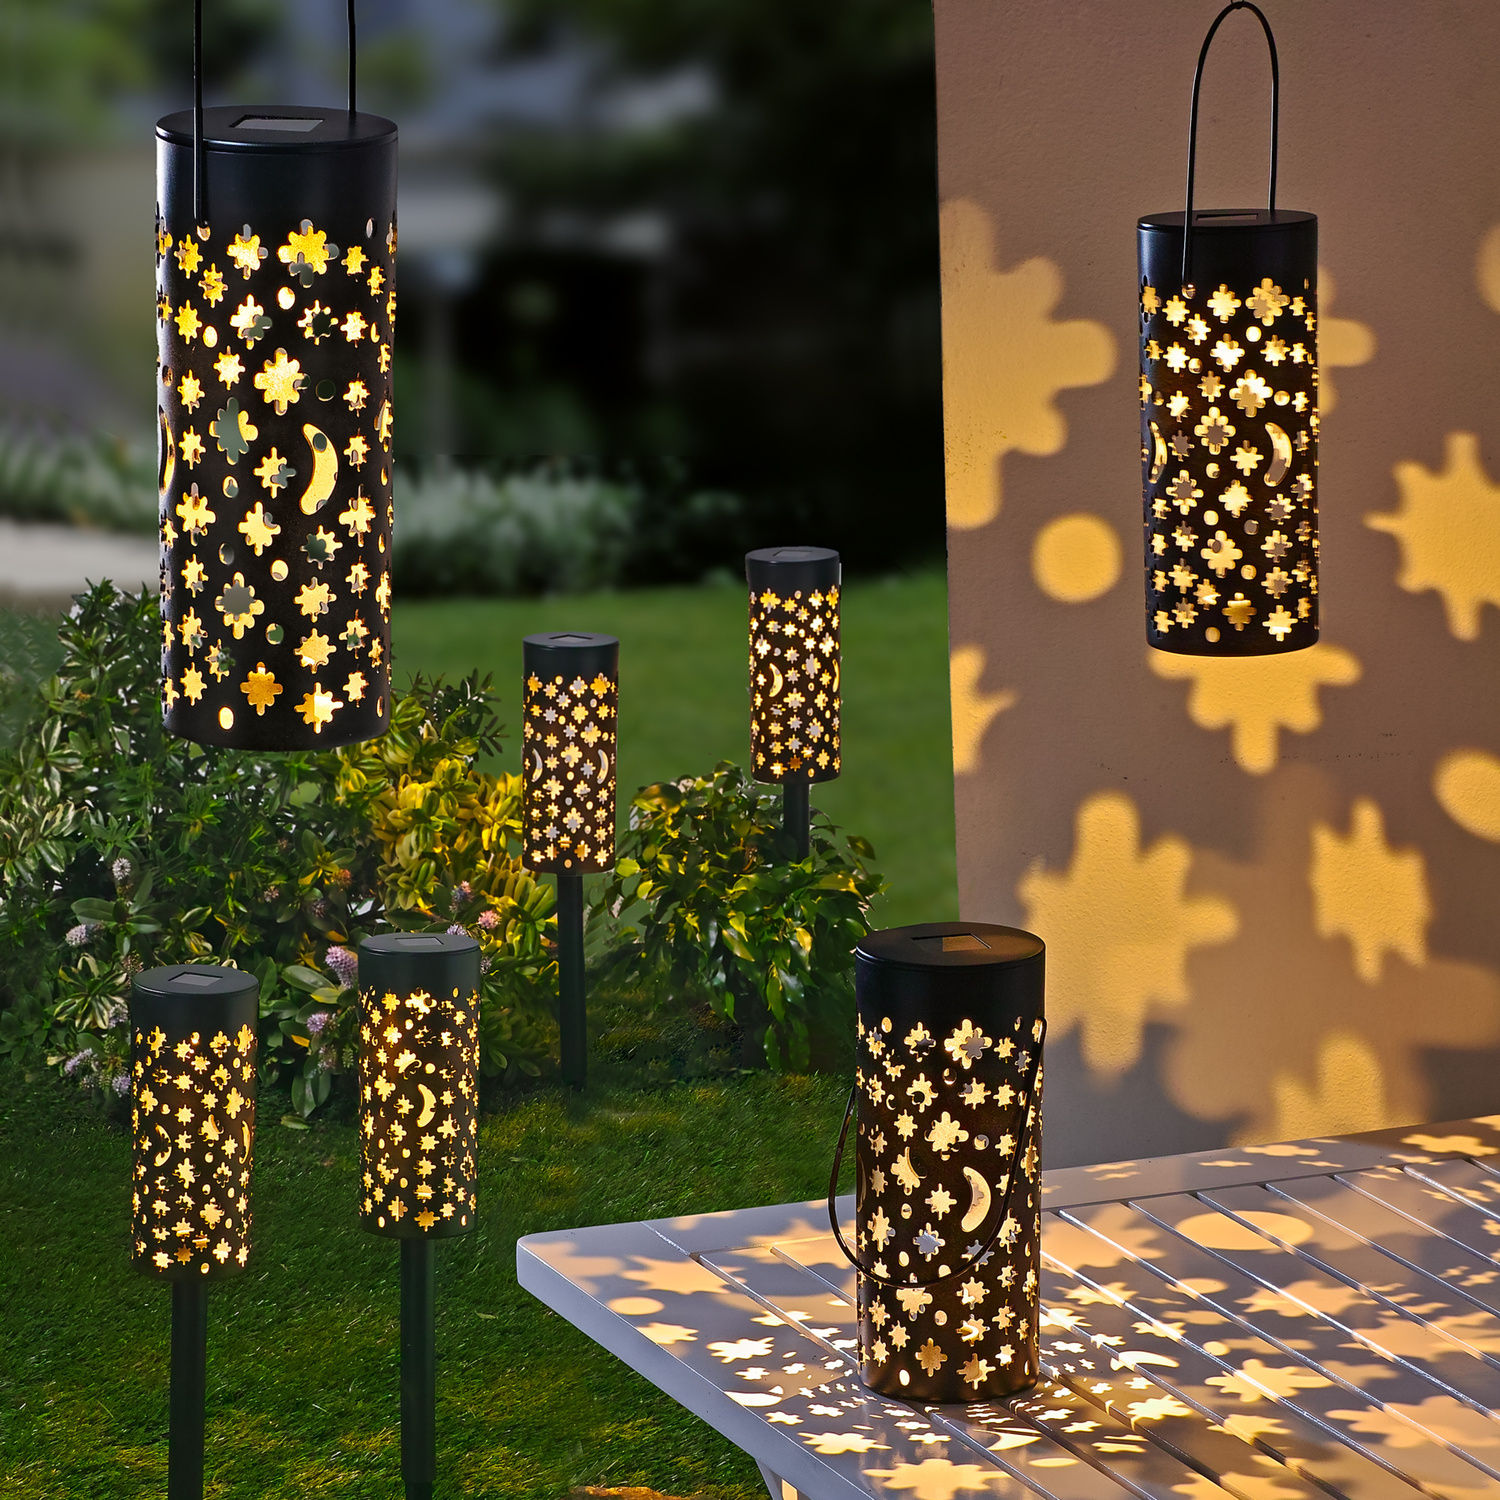 LED Garten Solar Leuchten 3-in-1 schwarz 2er Set - 18 x 7,5 cm - Deko Lampen zum Stellen Hängen oder Stecken